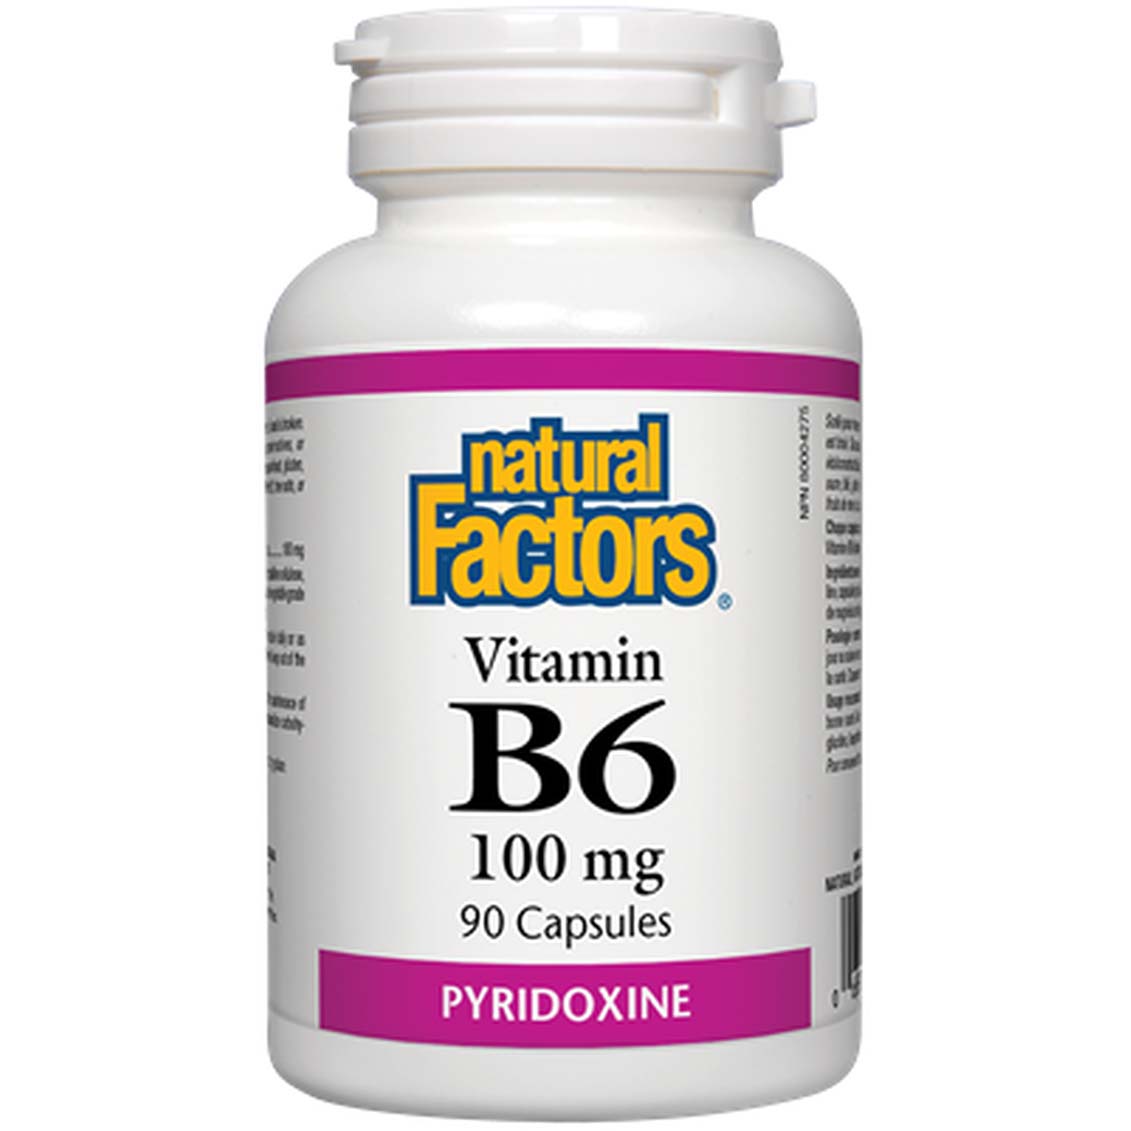 ناتشورال فاكتورز فيتامين ب 6 بيريدوكسين 90 كبسولة 100 ملجم